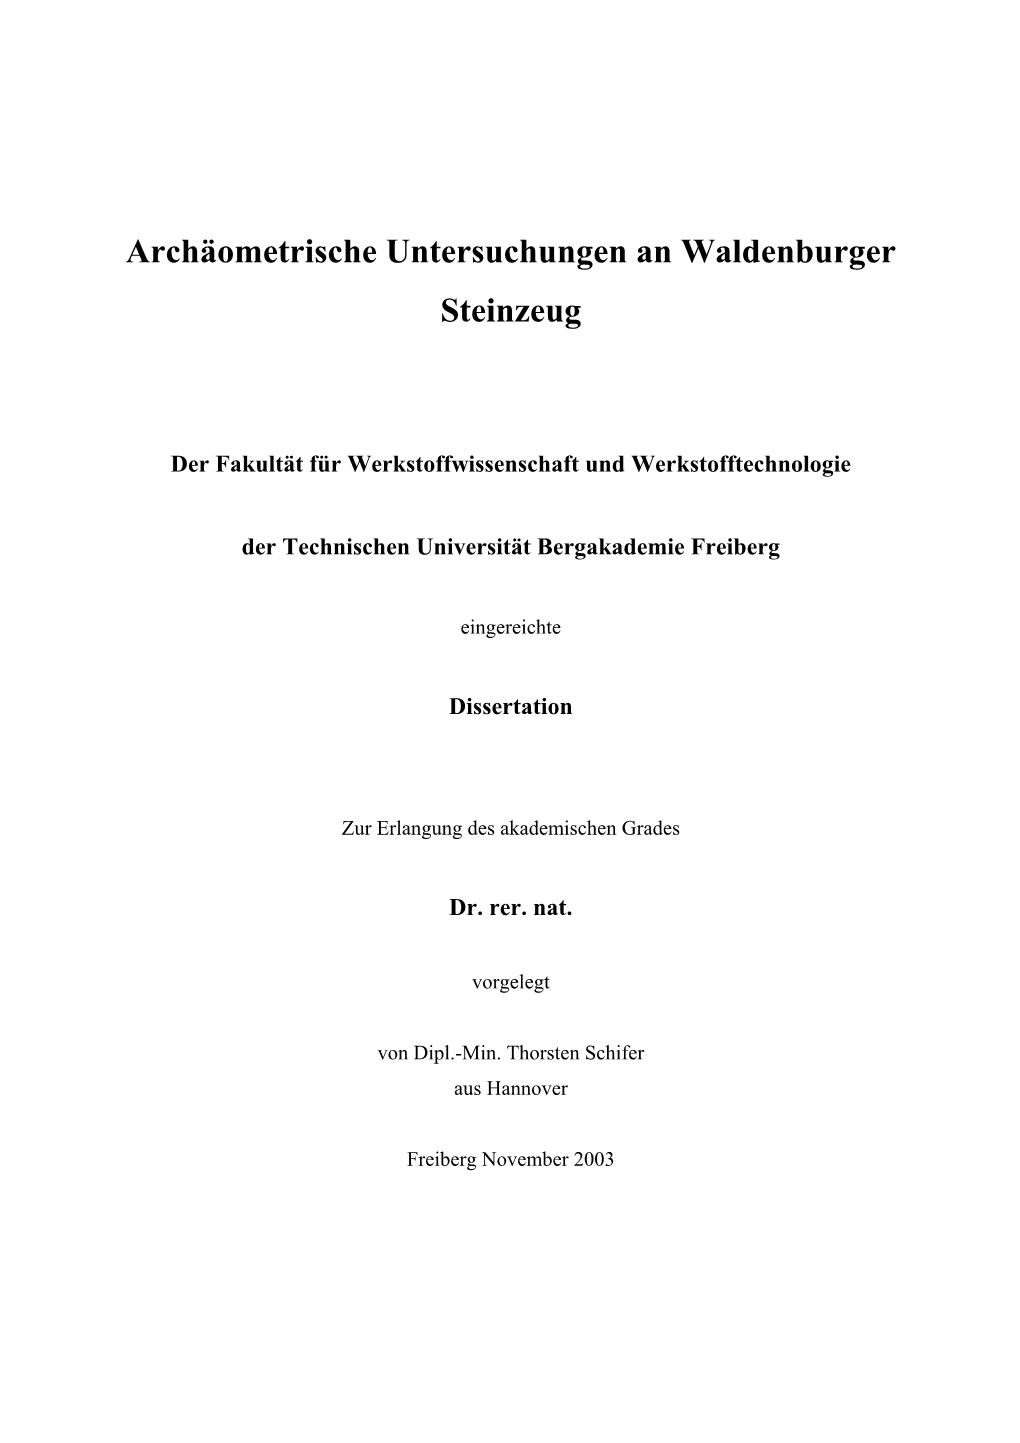 Archäometrische Untersuchungen an Waldenburger Steinzeug